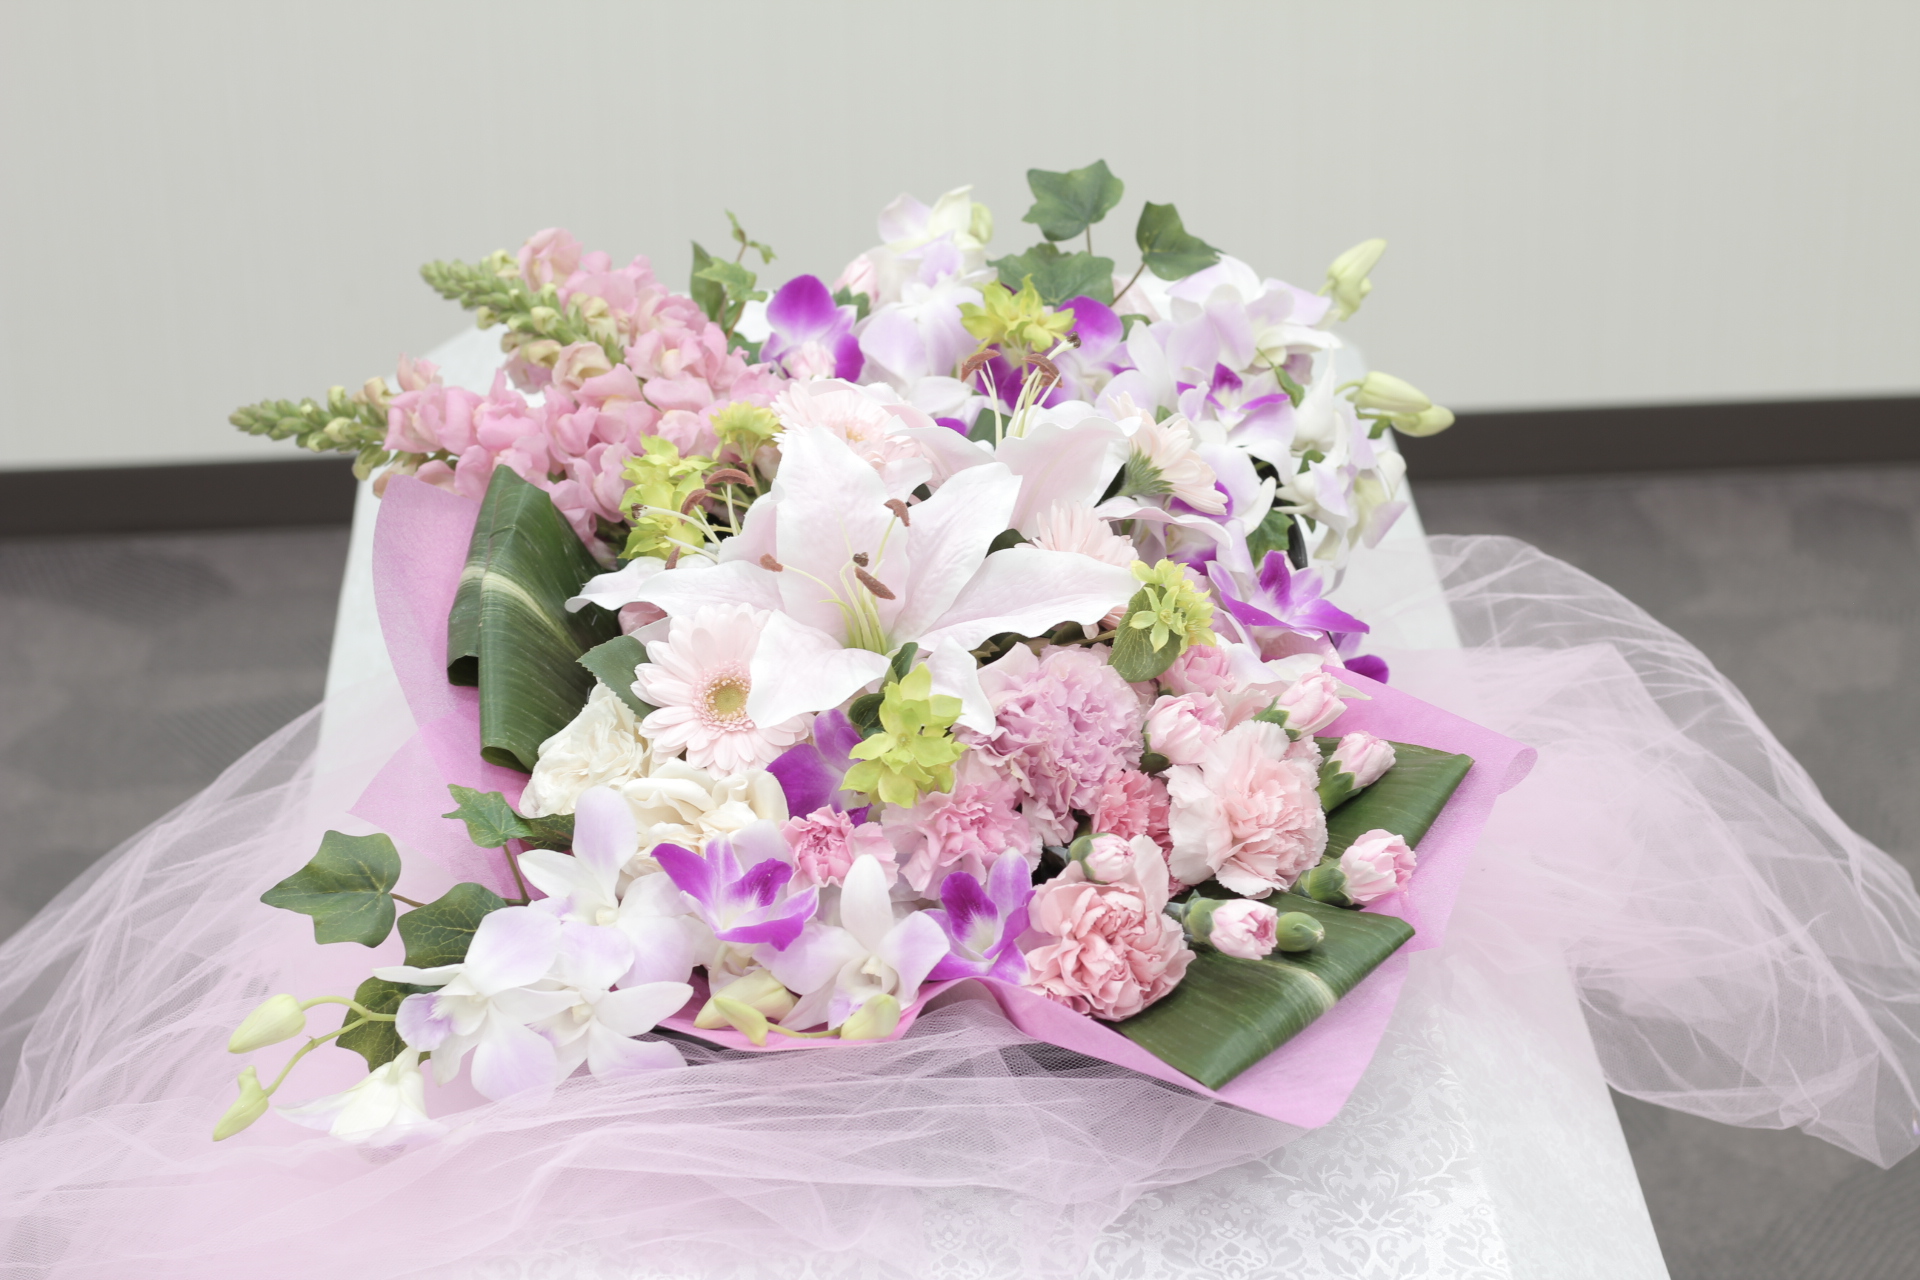 ピンクのお別れの花 おてごろ葬 福岡 大阪の直葬や火葬式などの格安葬儀